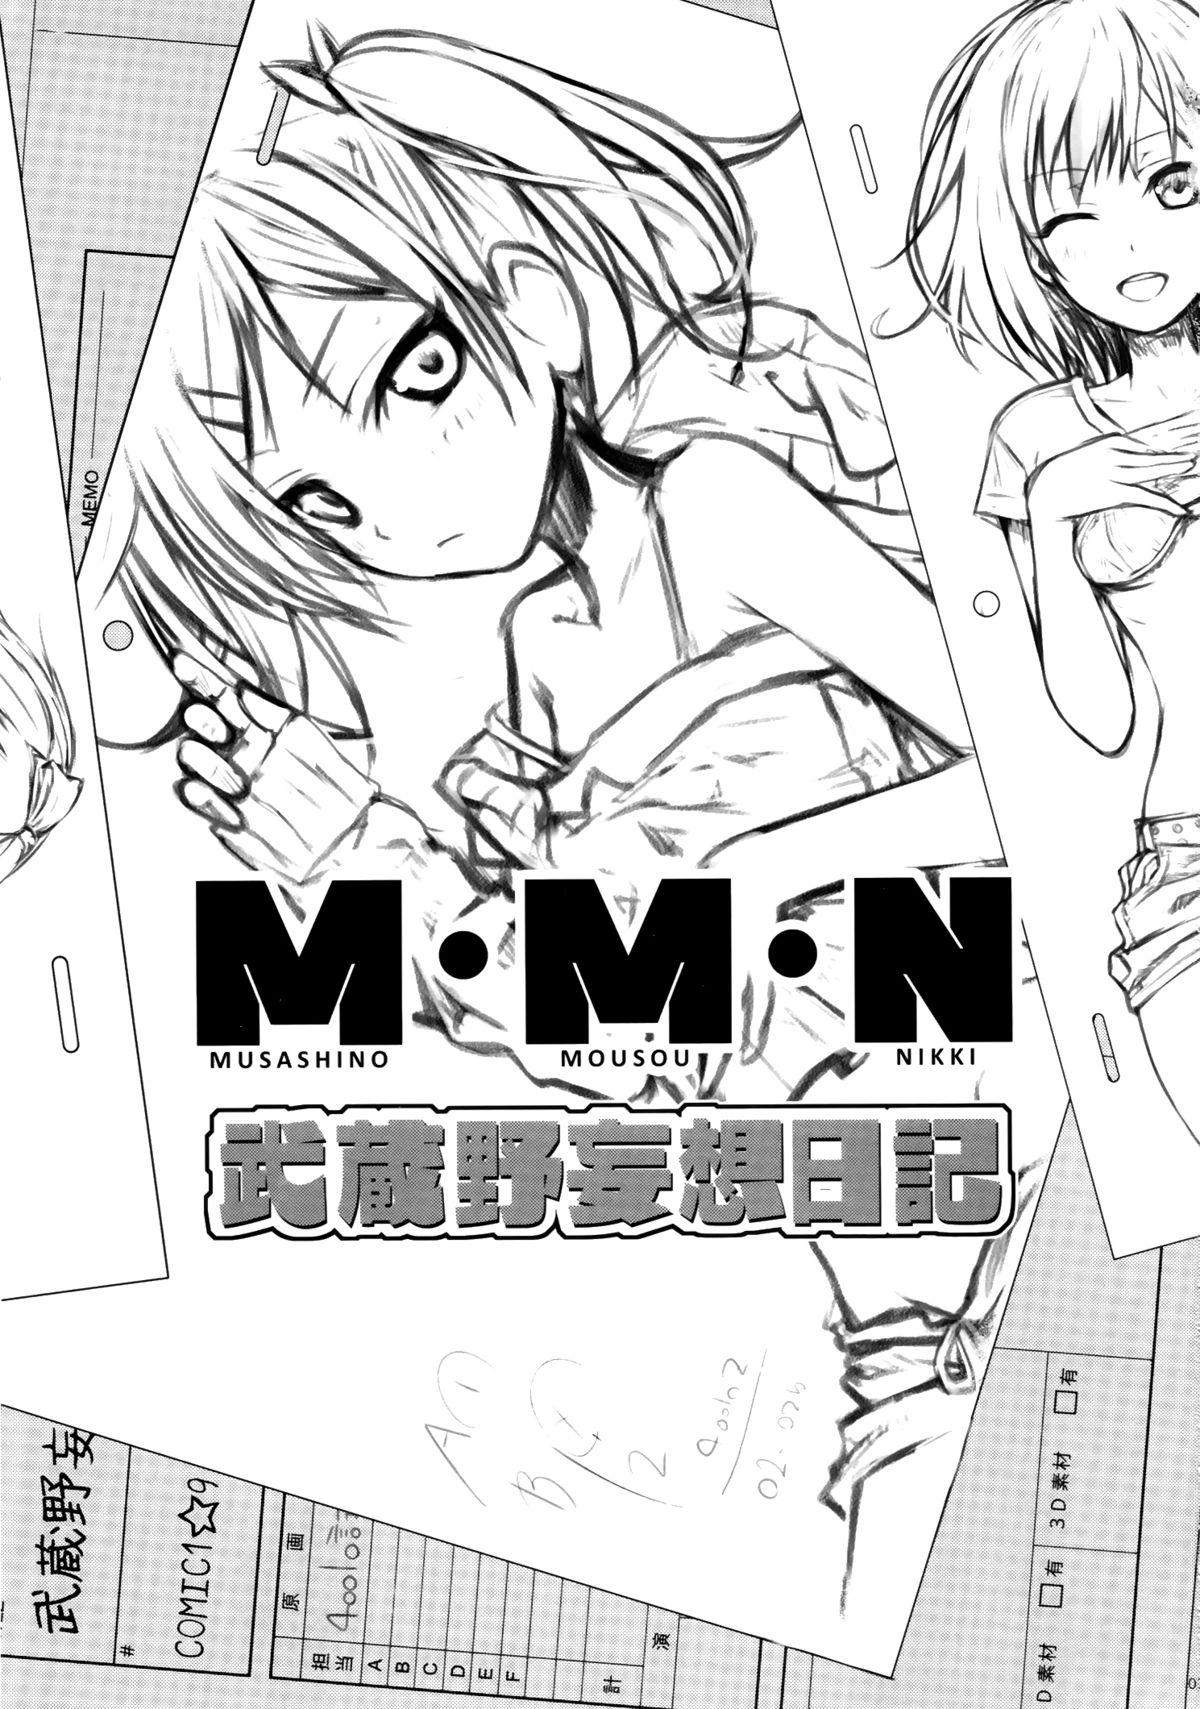 Yanks Featured Musashino Mousou Nikki - Shirobako Gets - Page 3